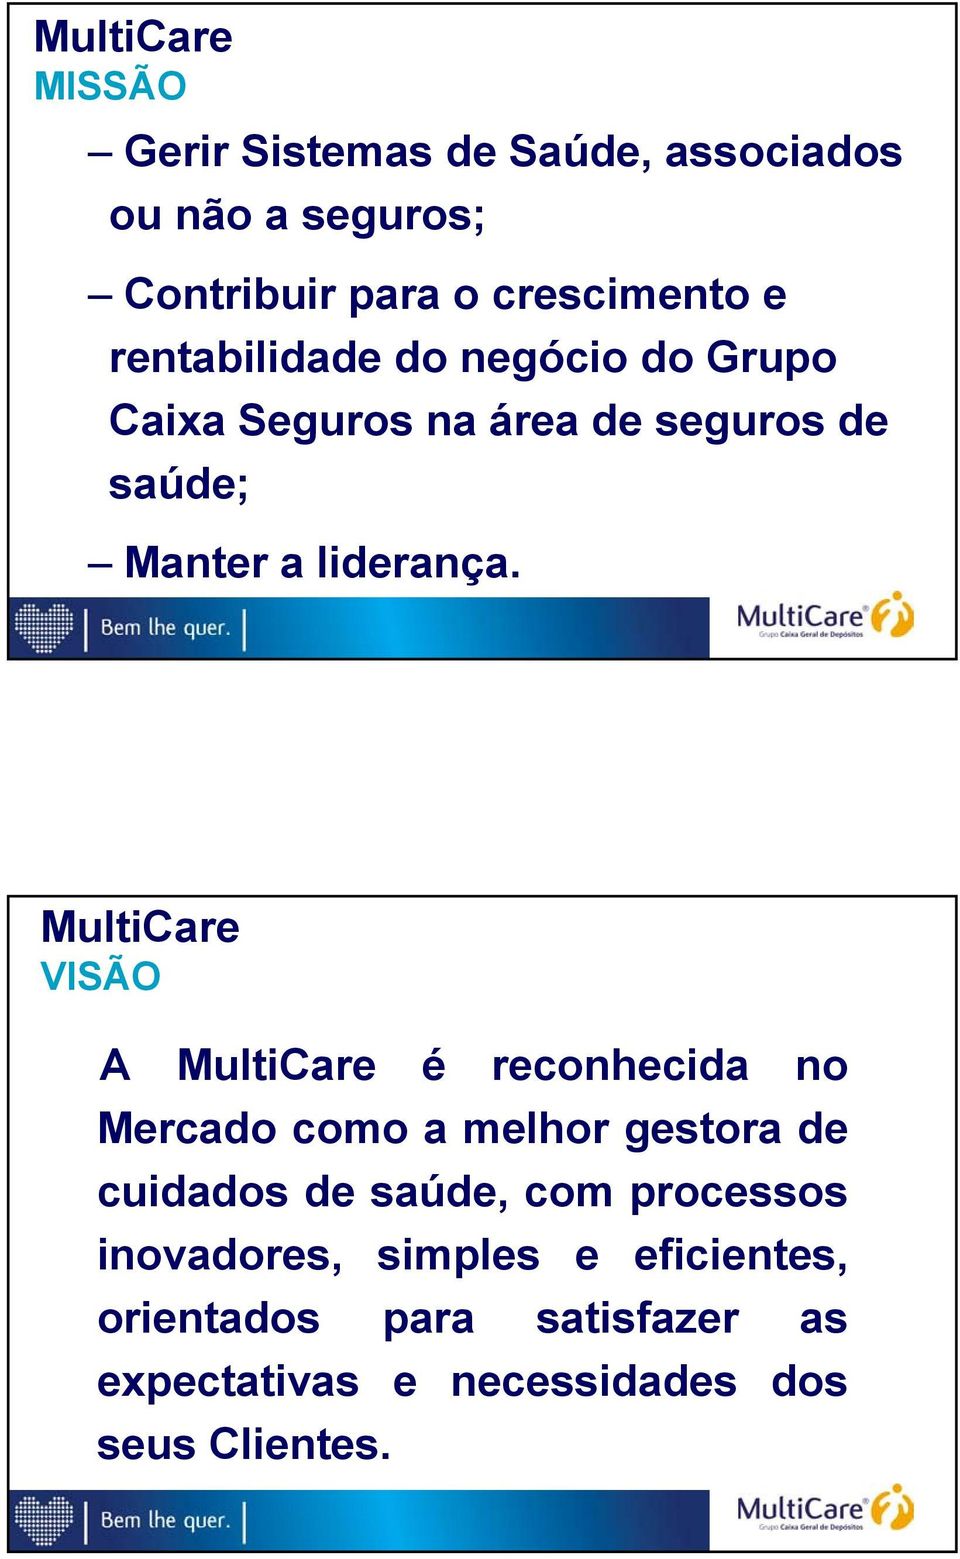 MultiCare VISÃO A MultiCare é reconhecida no Mercado como a melhor gestora de cuidados de saúde, com